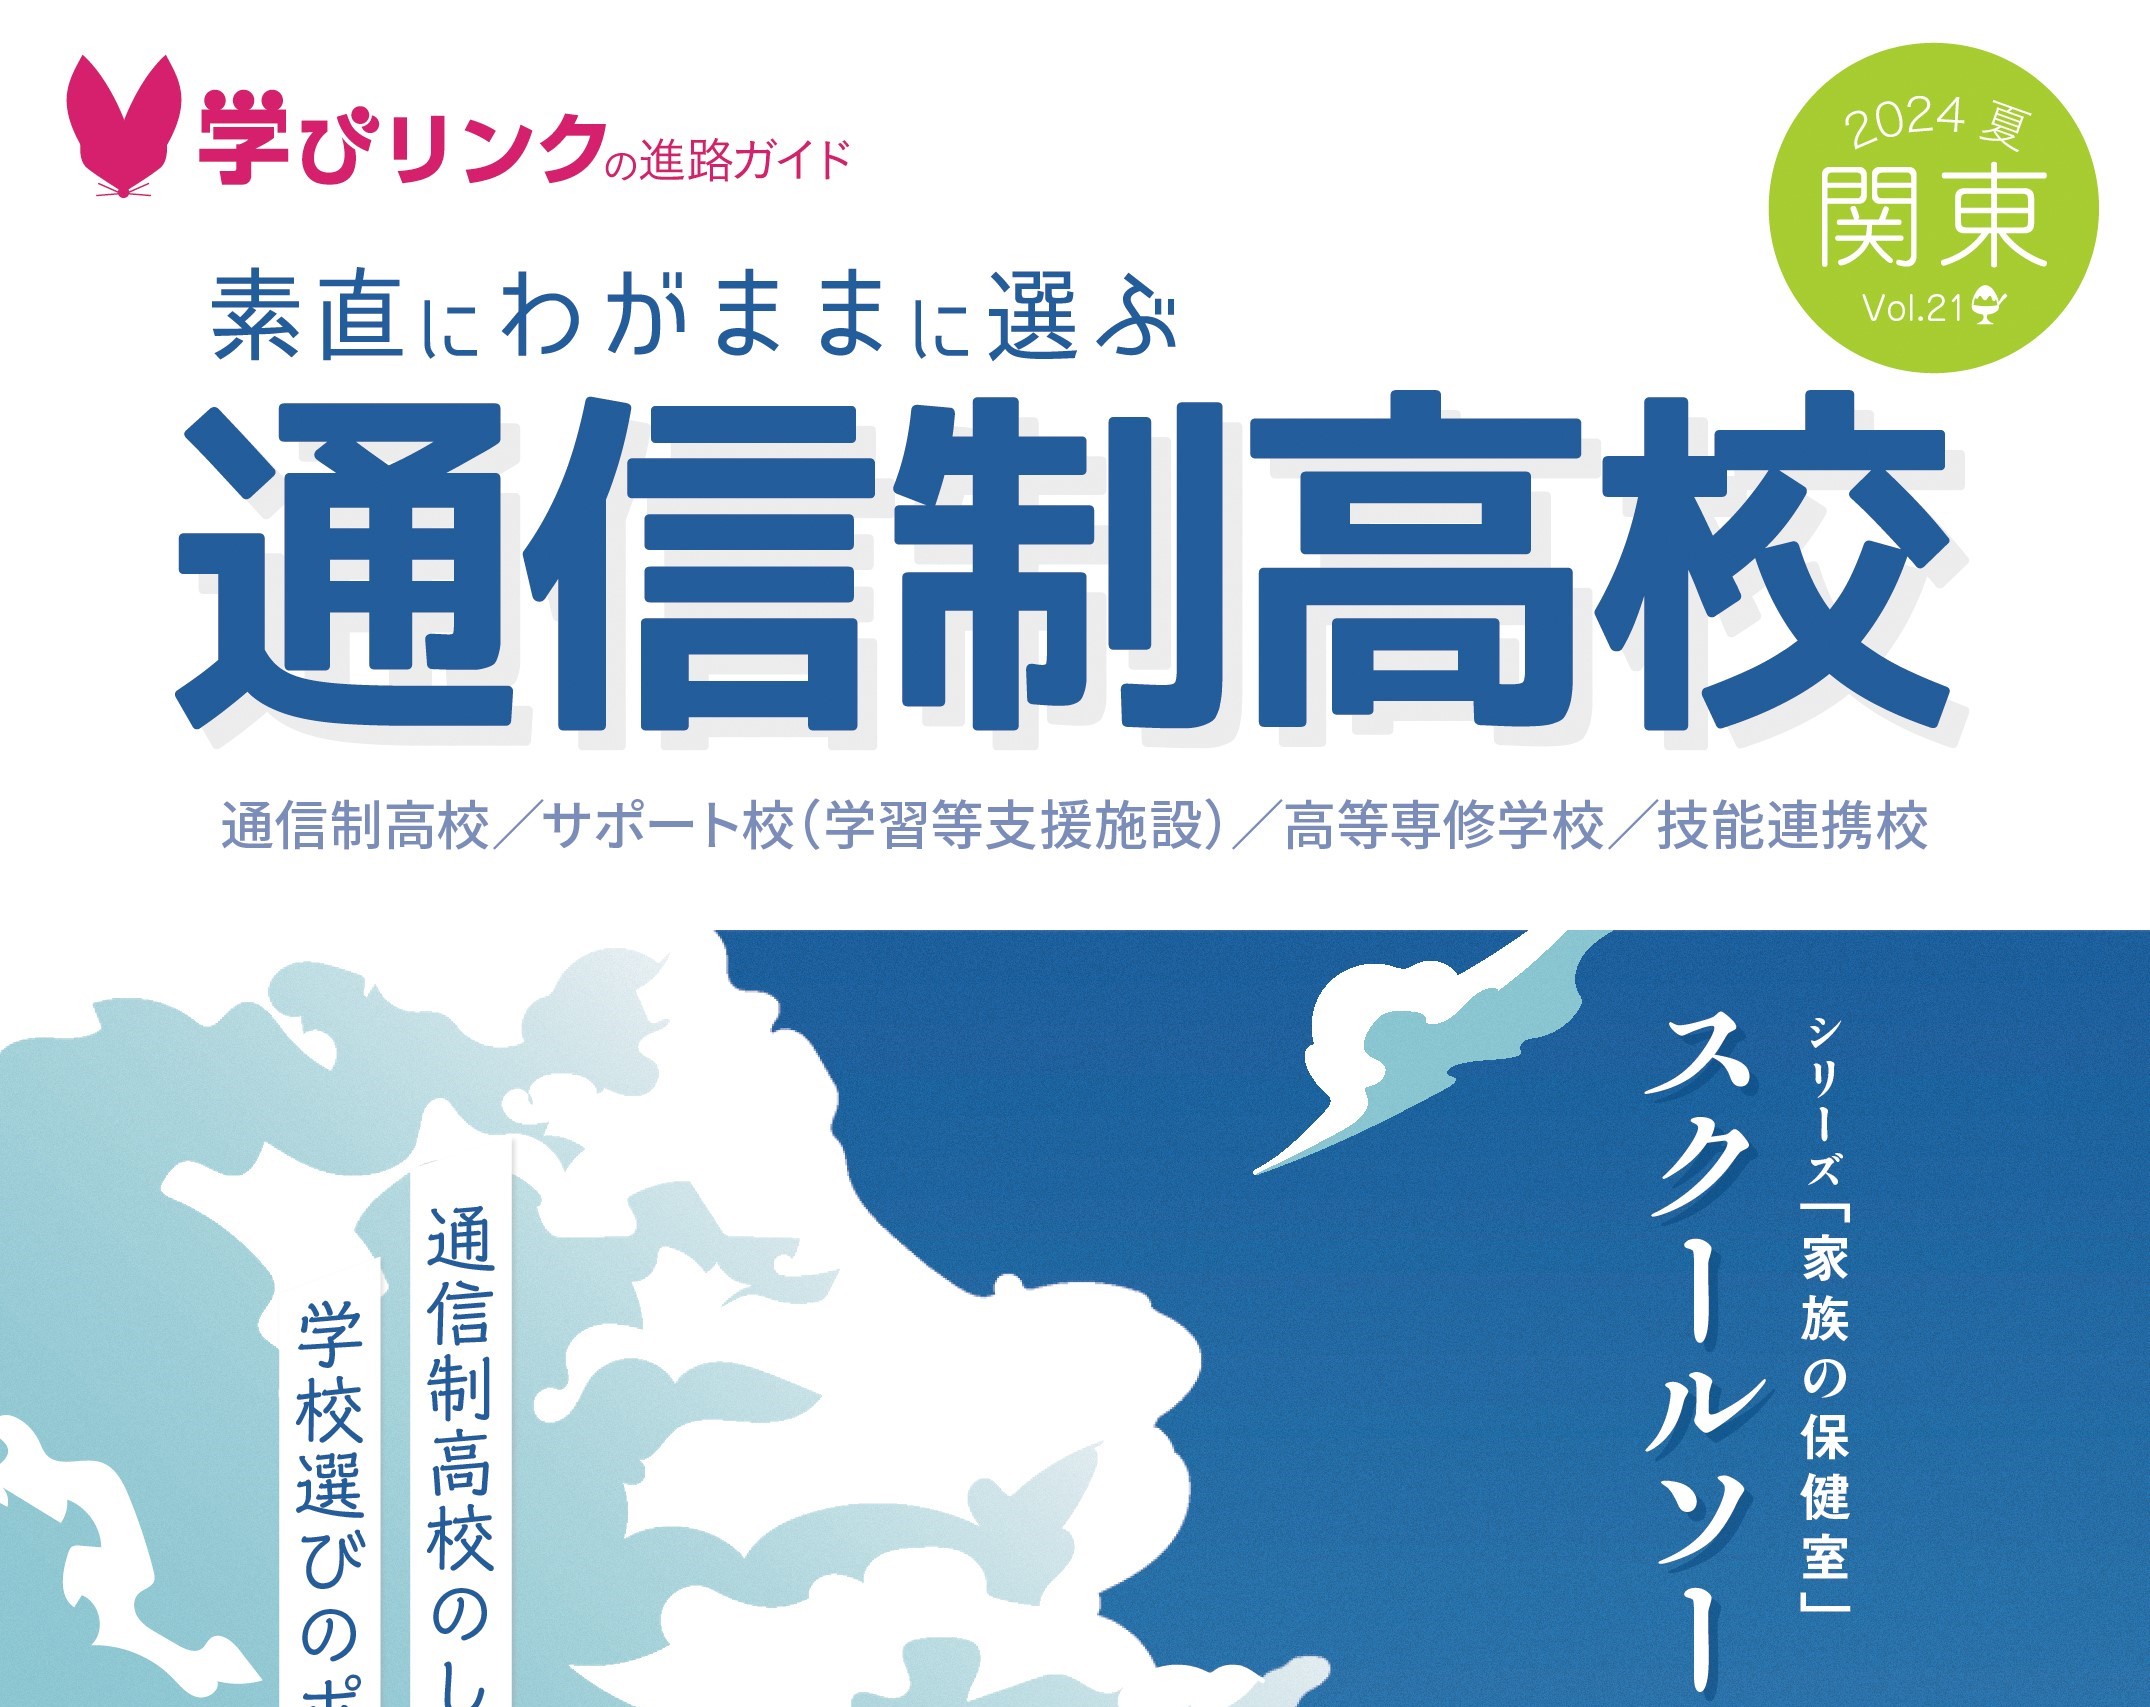 『素直にわがままに選ぶ通信制高校』2024年夏号 関東版を発行しました